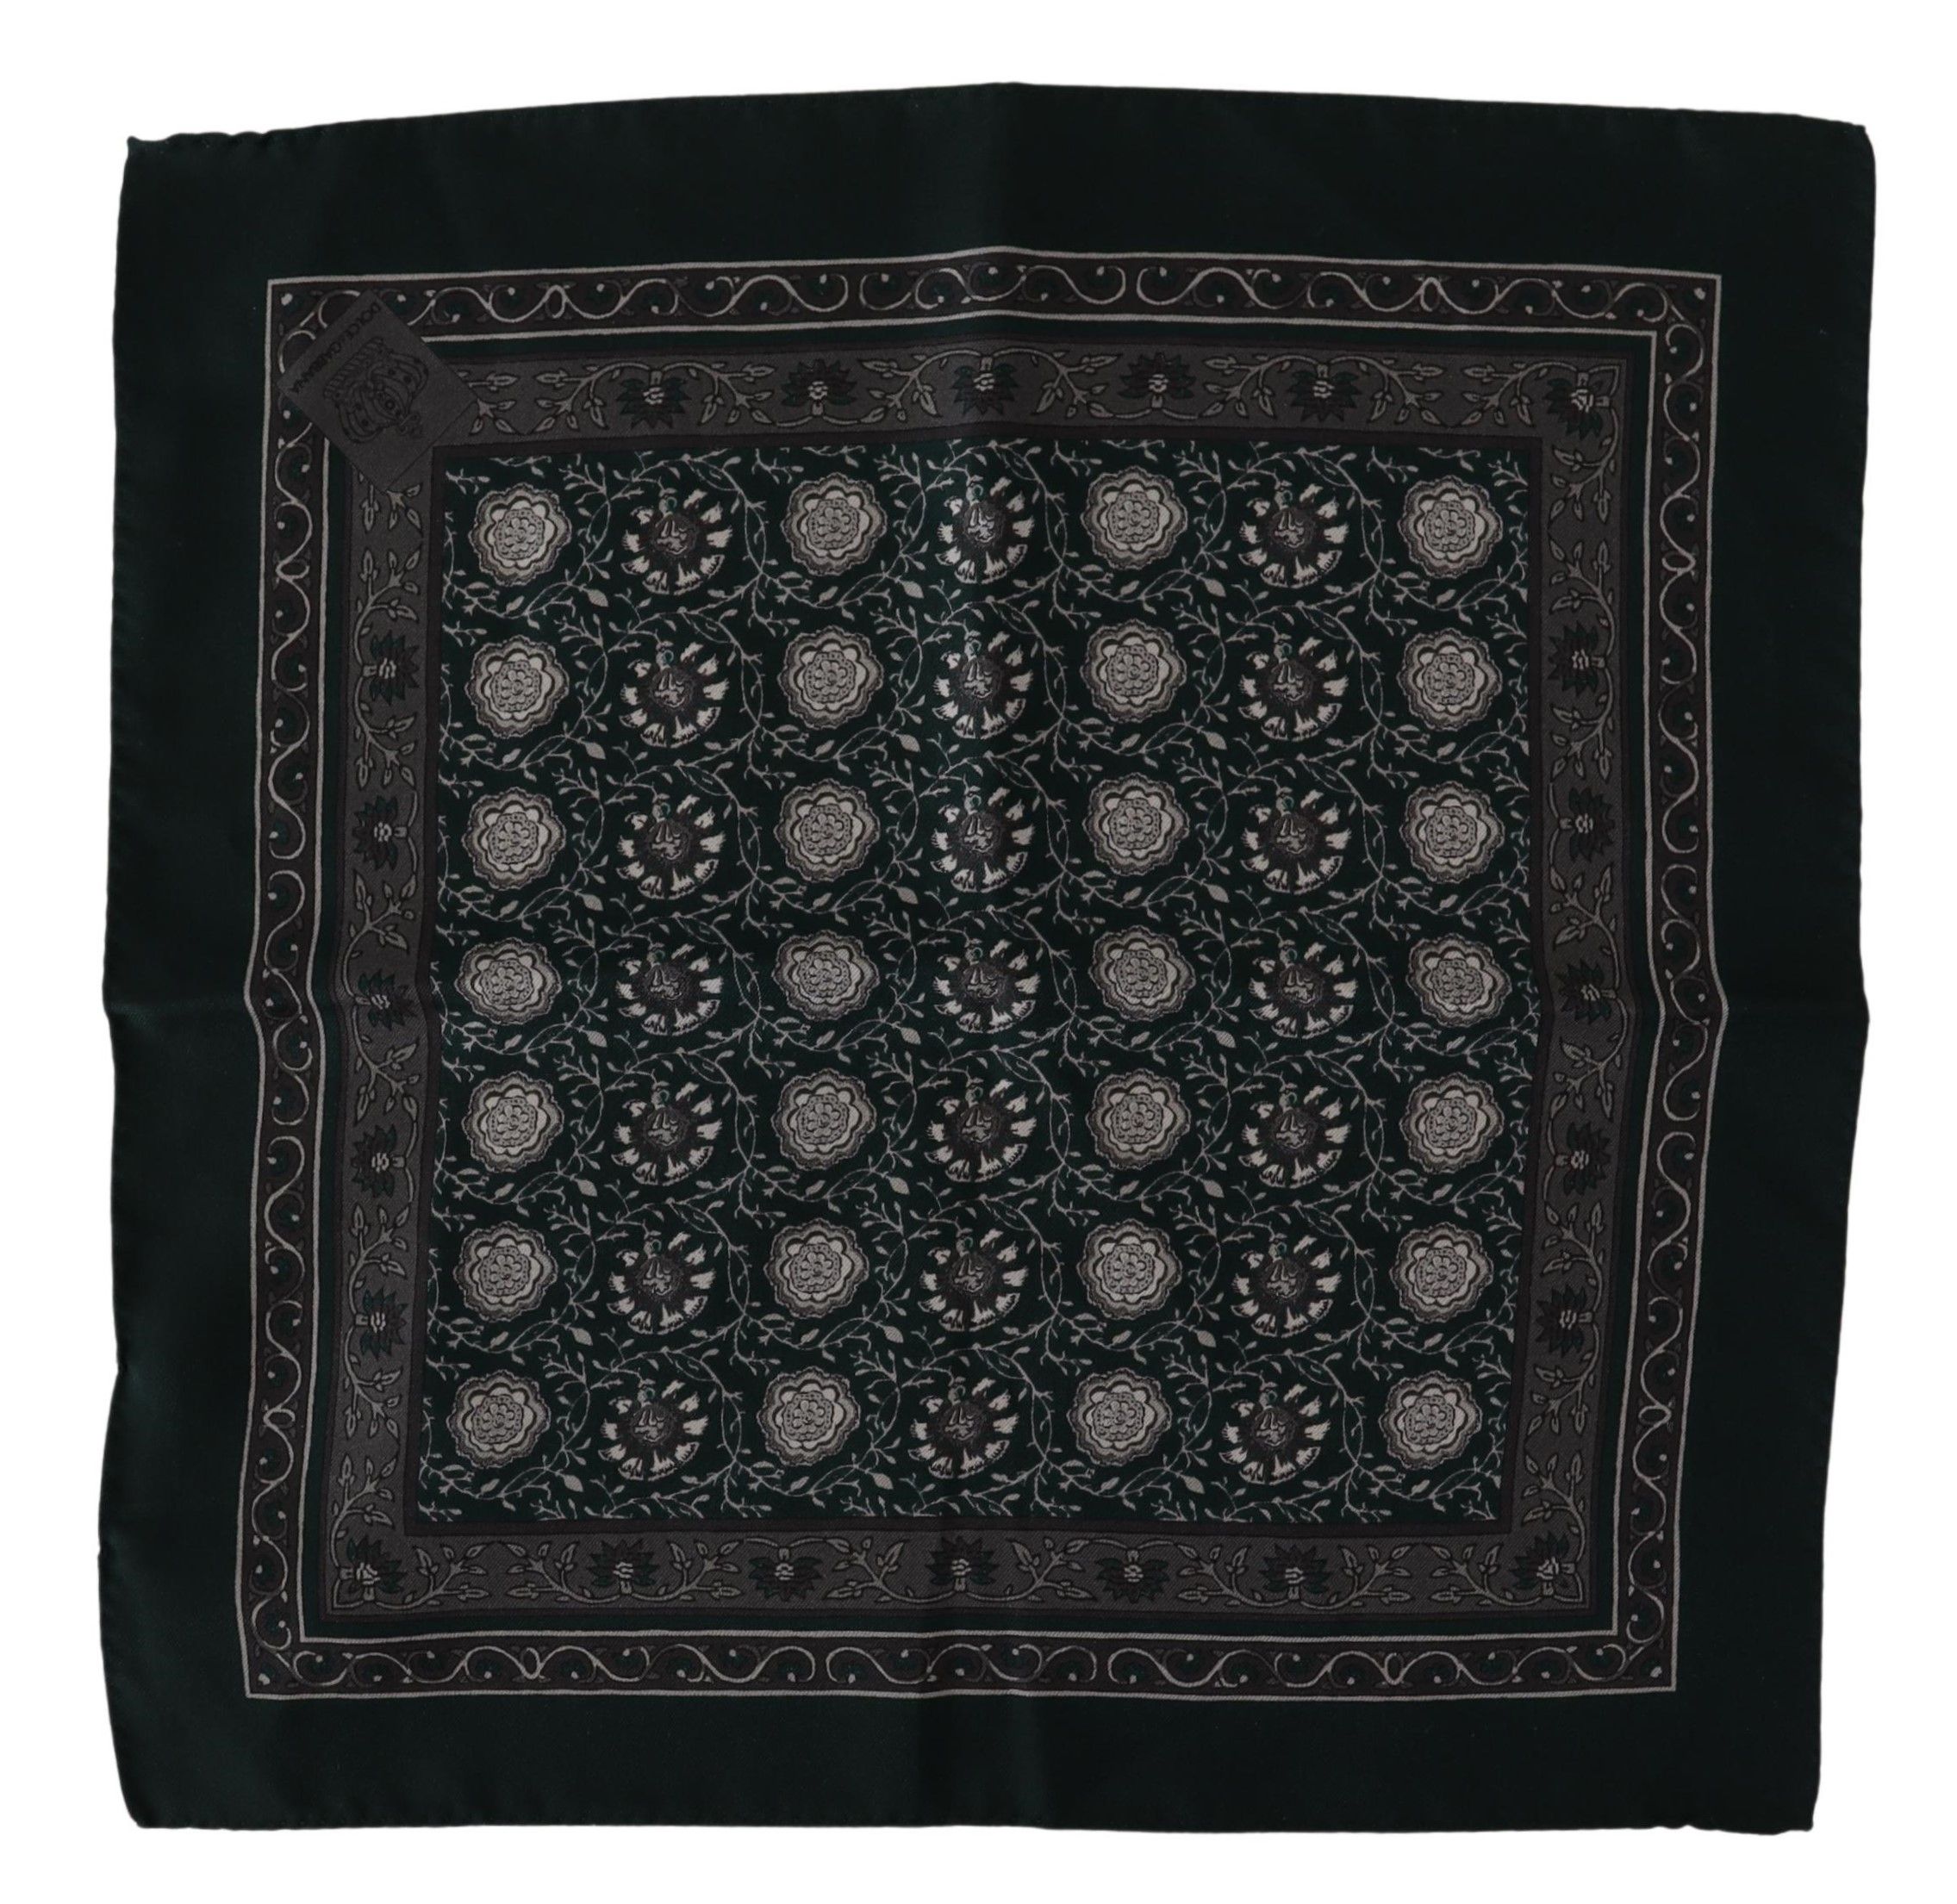 Exquisite Silk Pocket Square Handkerchief